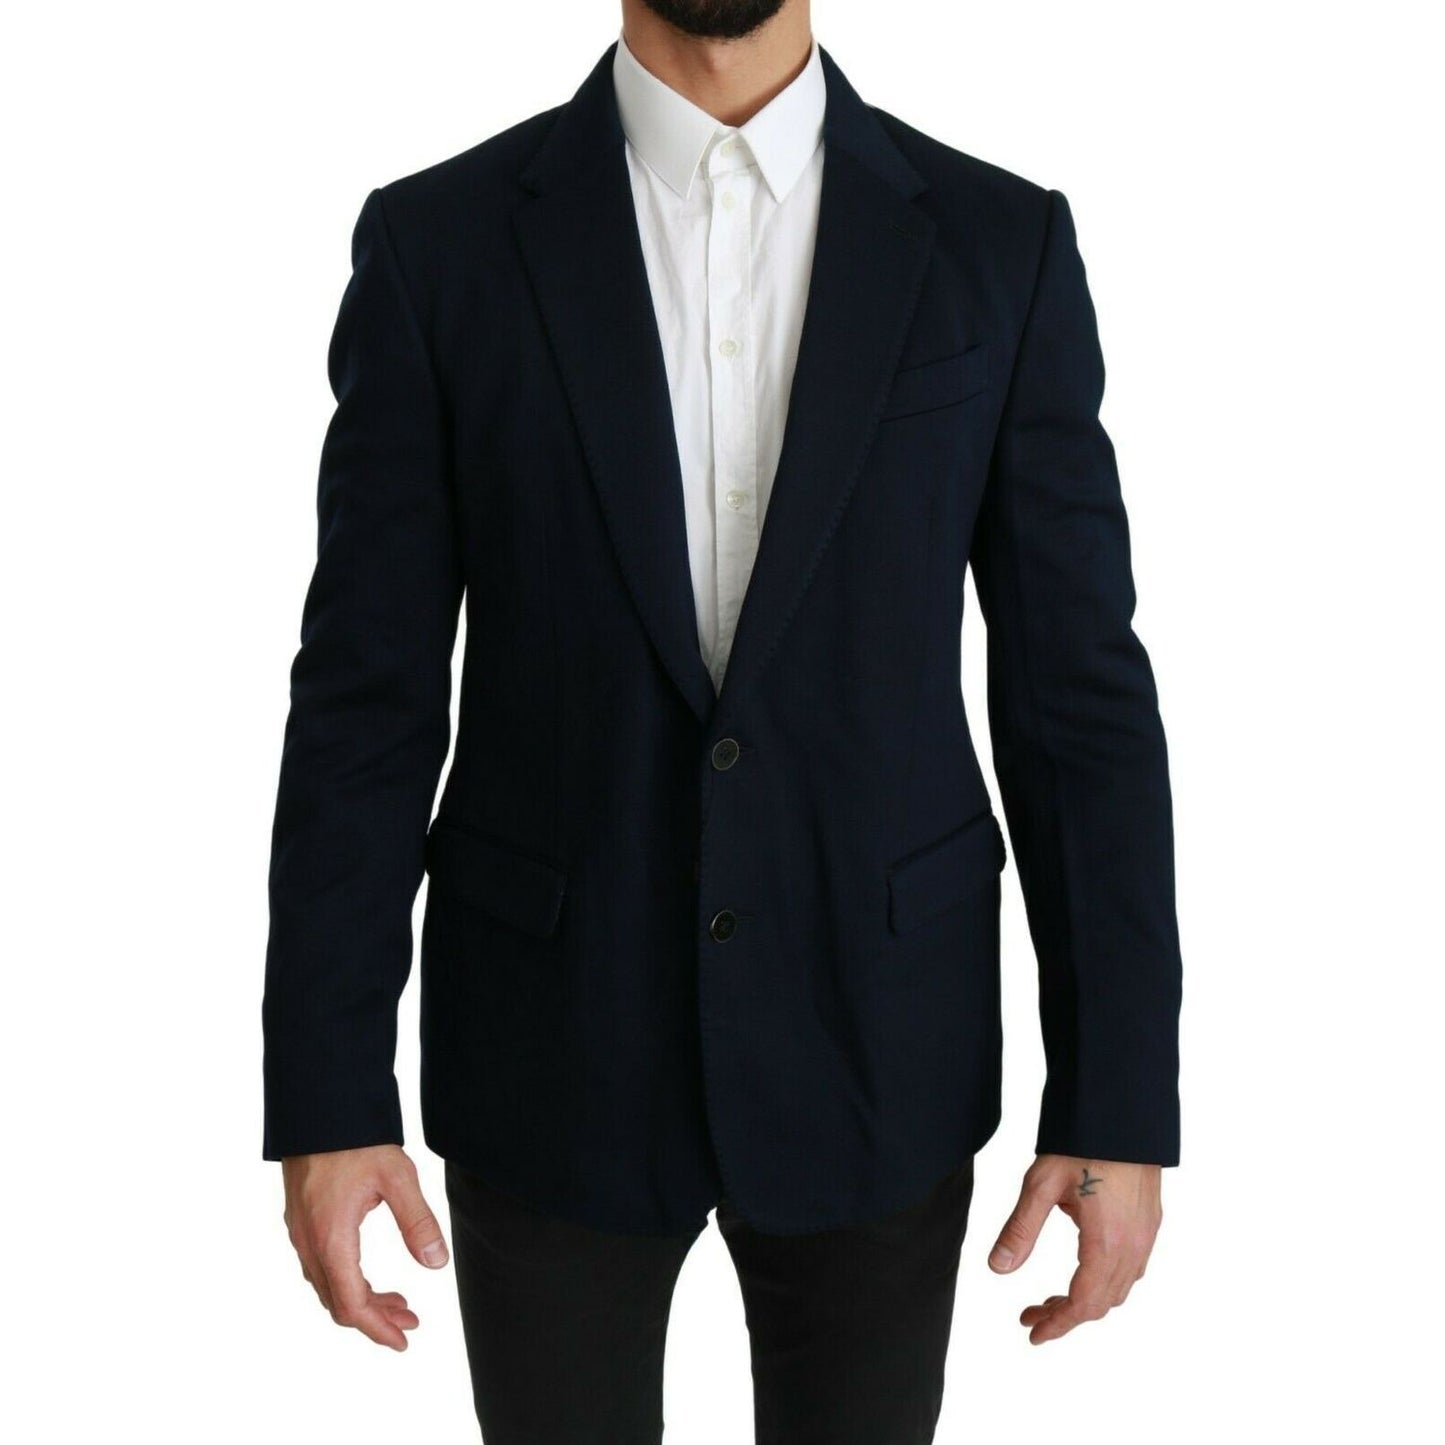 Dolce & Gabbana Elegant Slim Fit Dark Blue Men's Blazer blue-solid-cotton-silk-stretch-jacket-blazer Blazer Jacket s-l1600-2022-09-19T155711.751-42aee98d-2a6.jpg